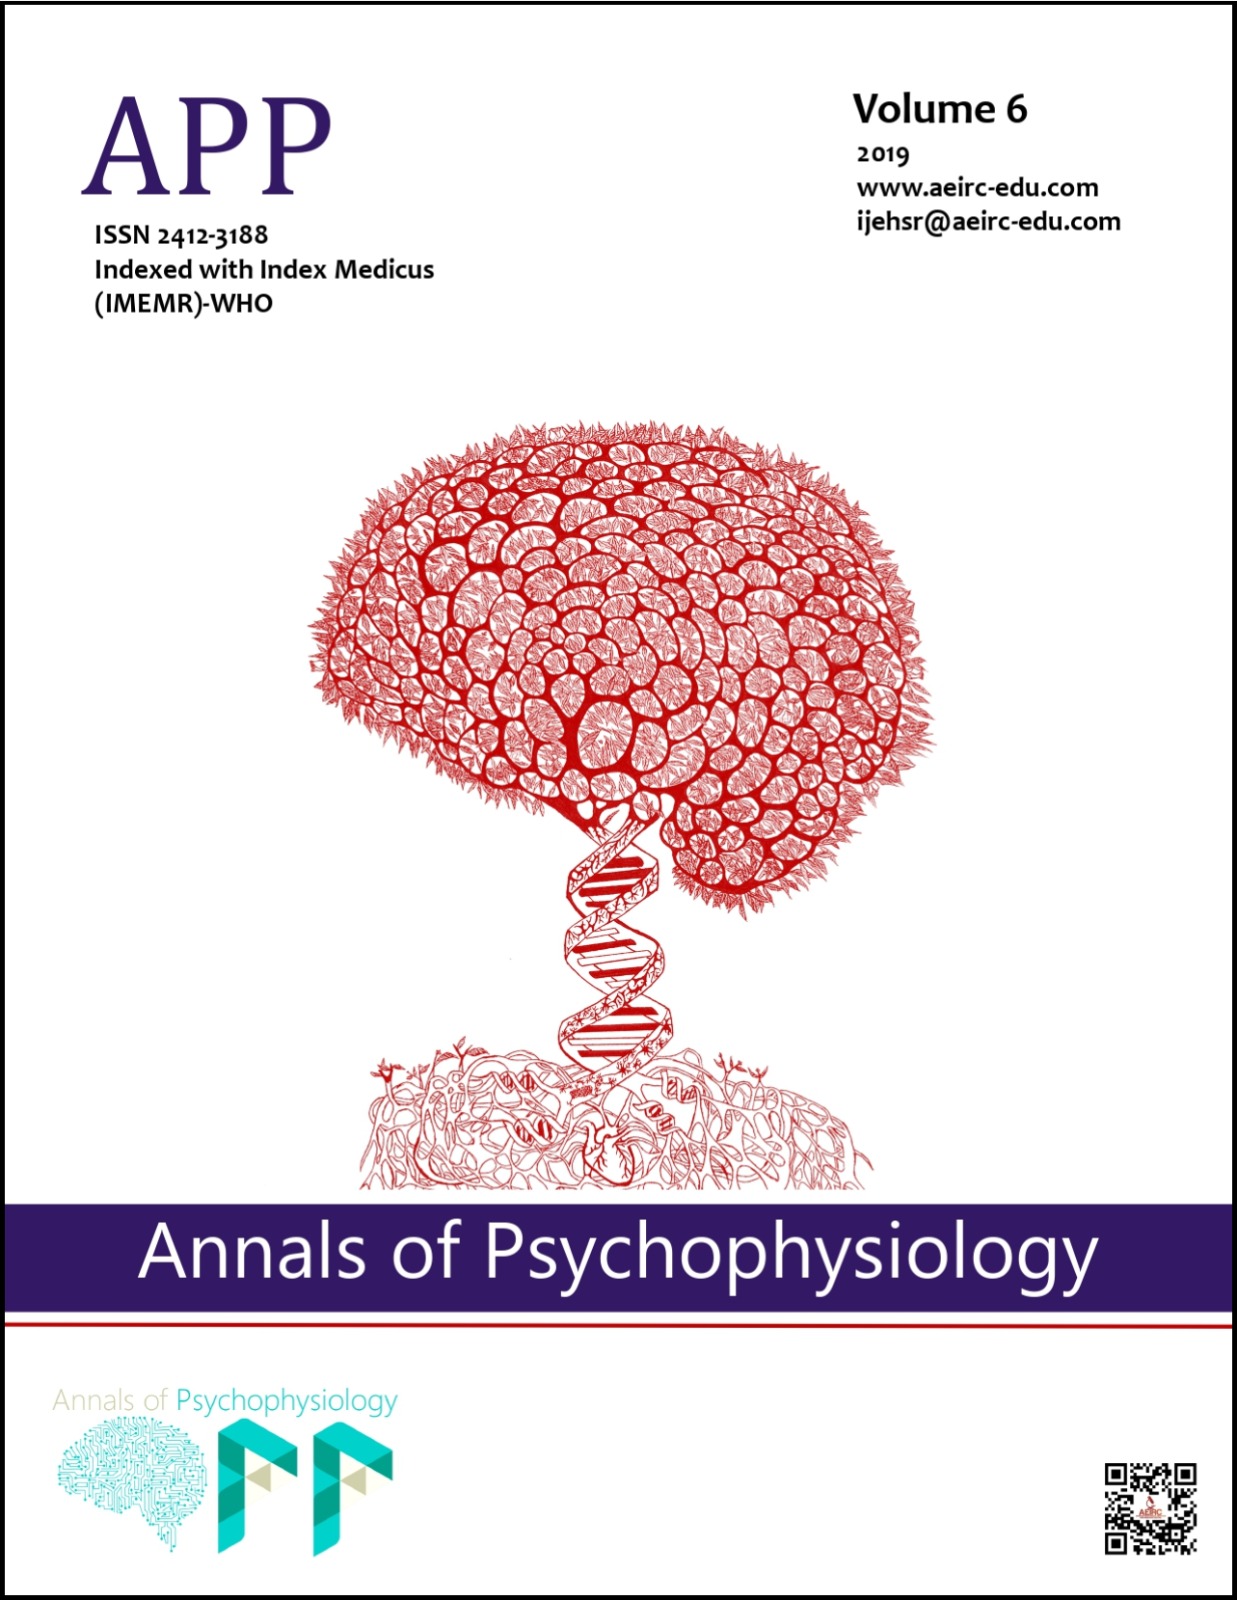 					View Vol. 6 (2019): Annals of Psychophysiology
				